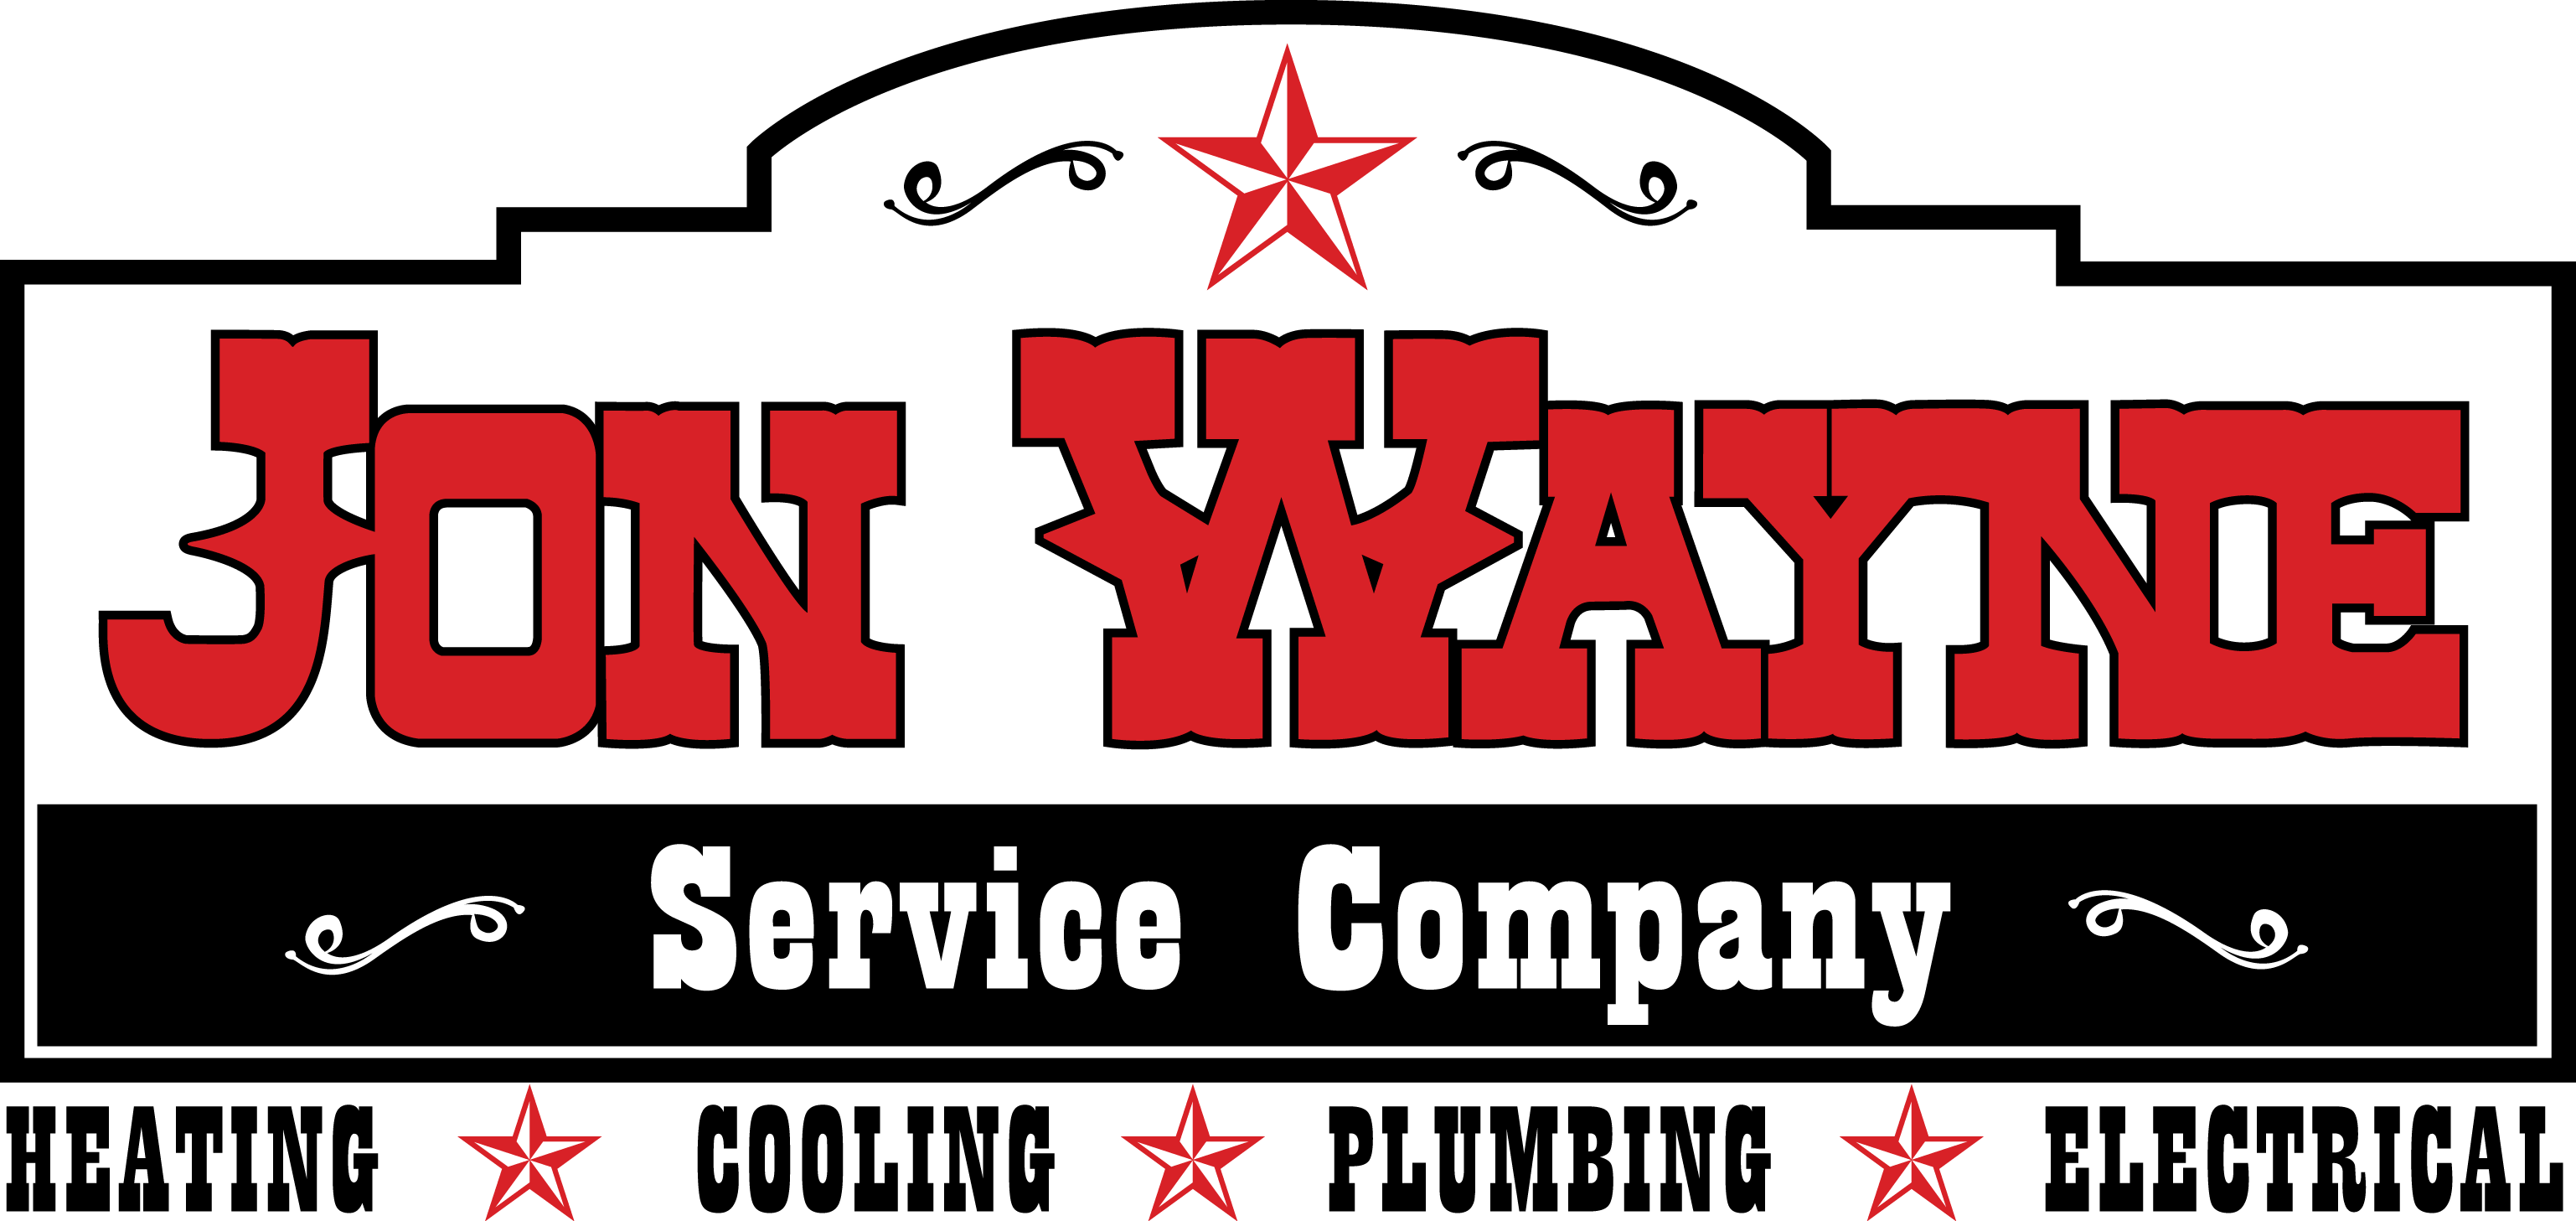 Jon Wayne Service Company Company Logo